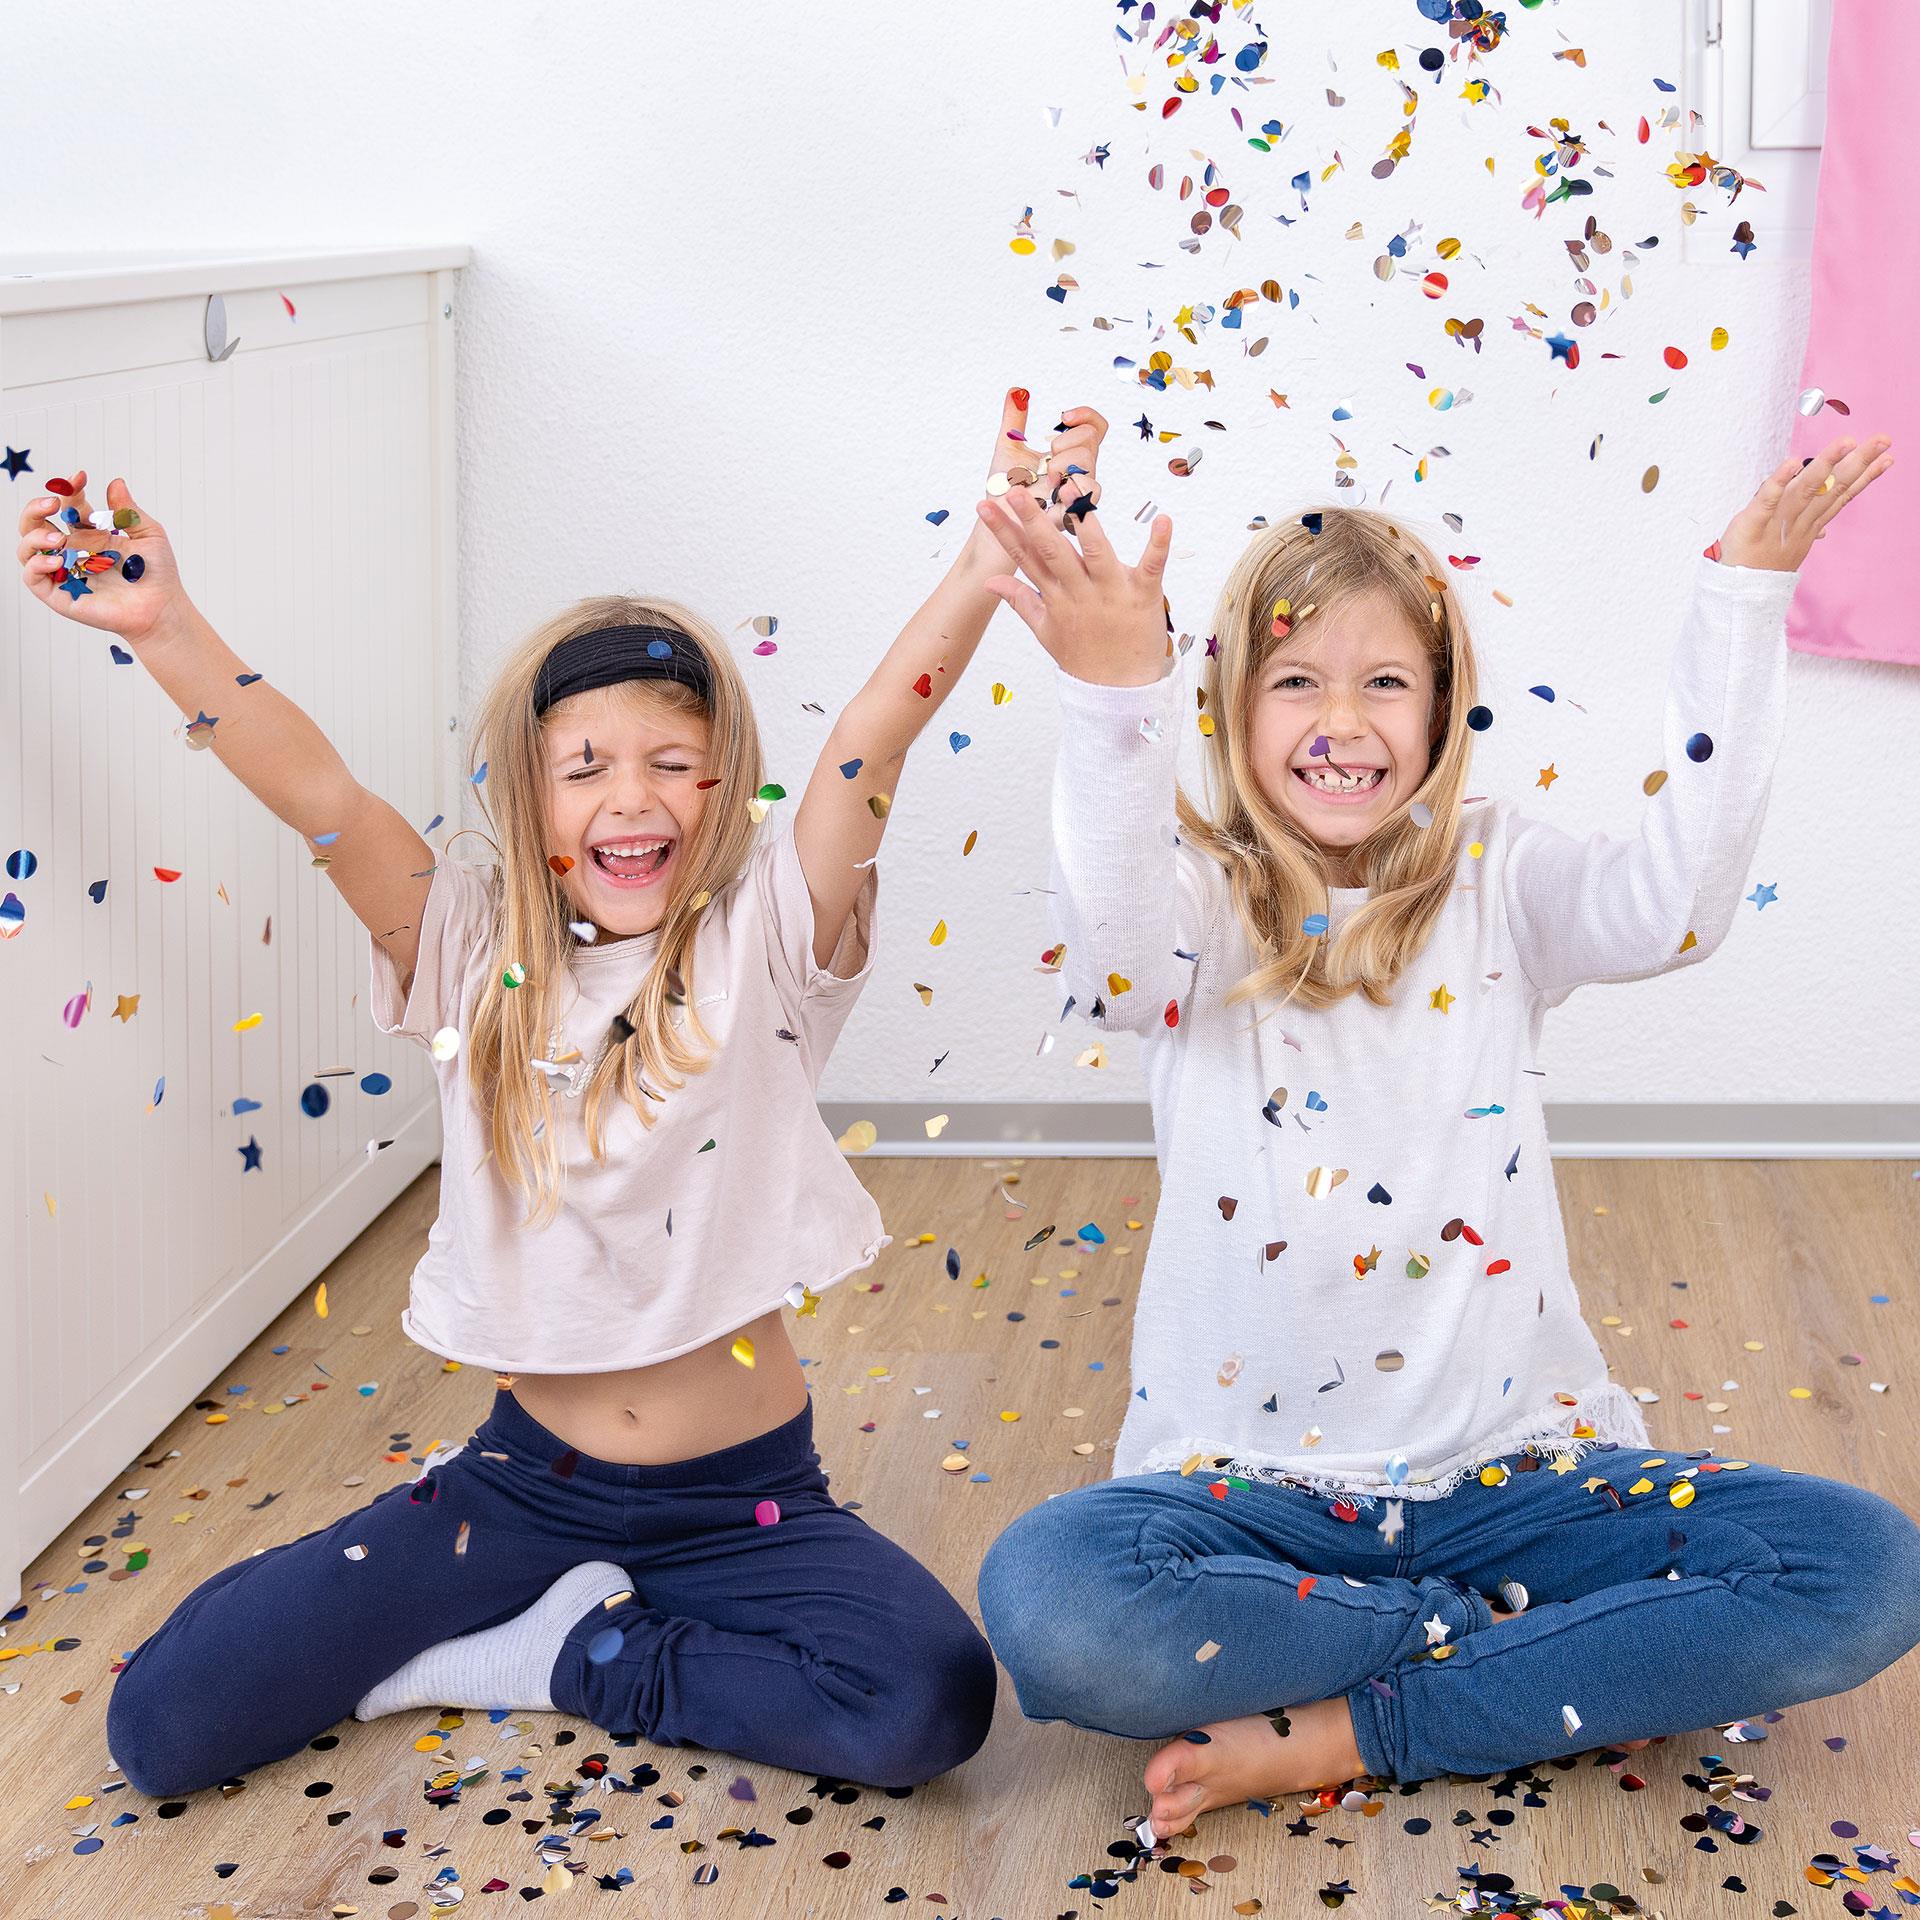 nouvel-an-avec-enfants-lanceur-confetti-bricolage-fete.jpg